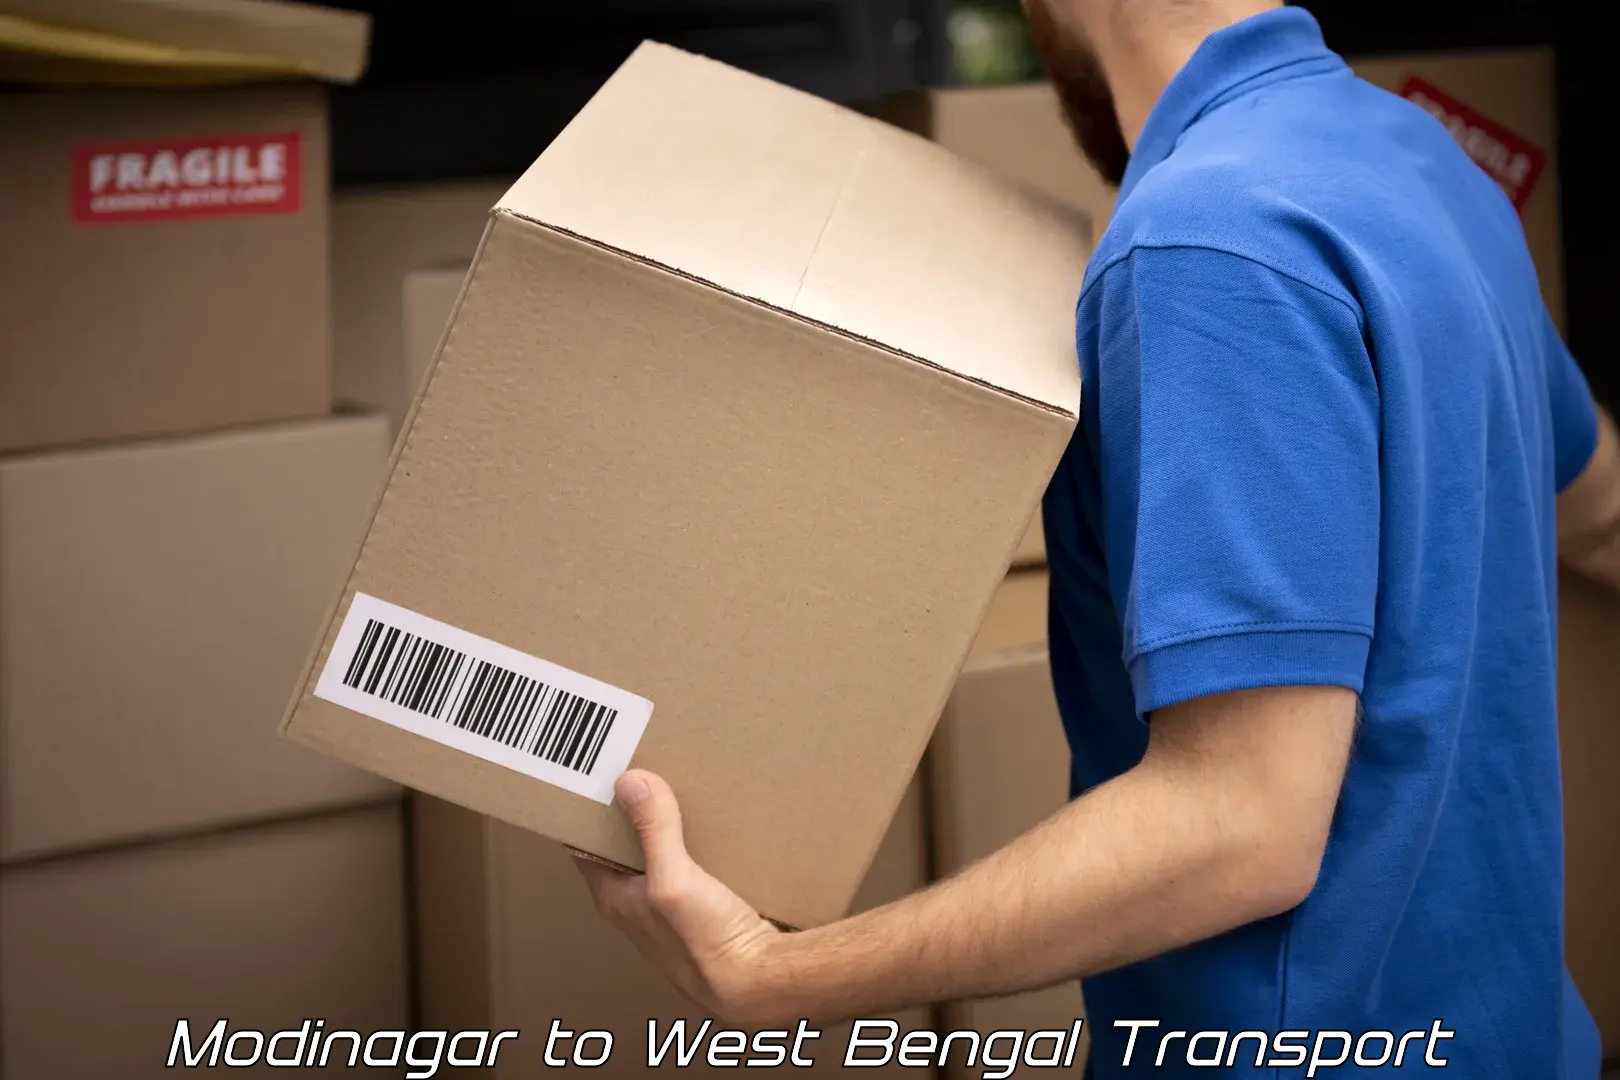 Cargo train transport services Modinagar to Bally